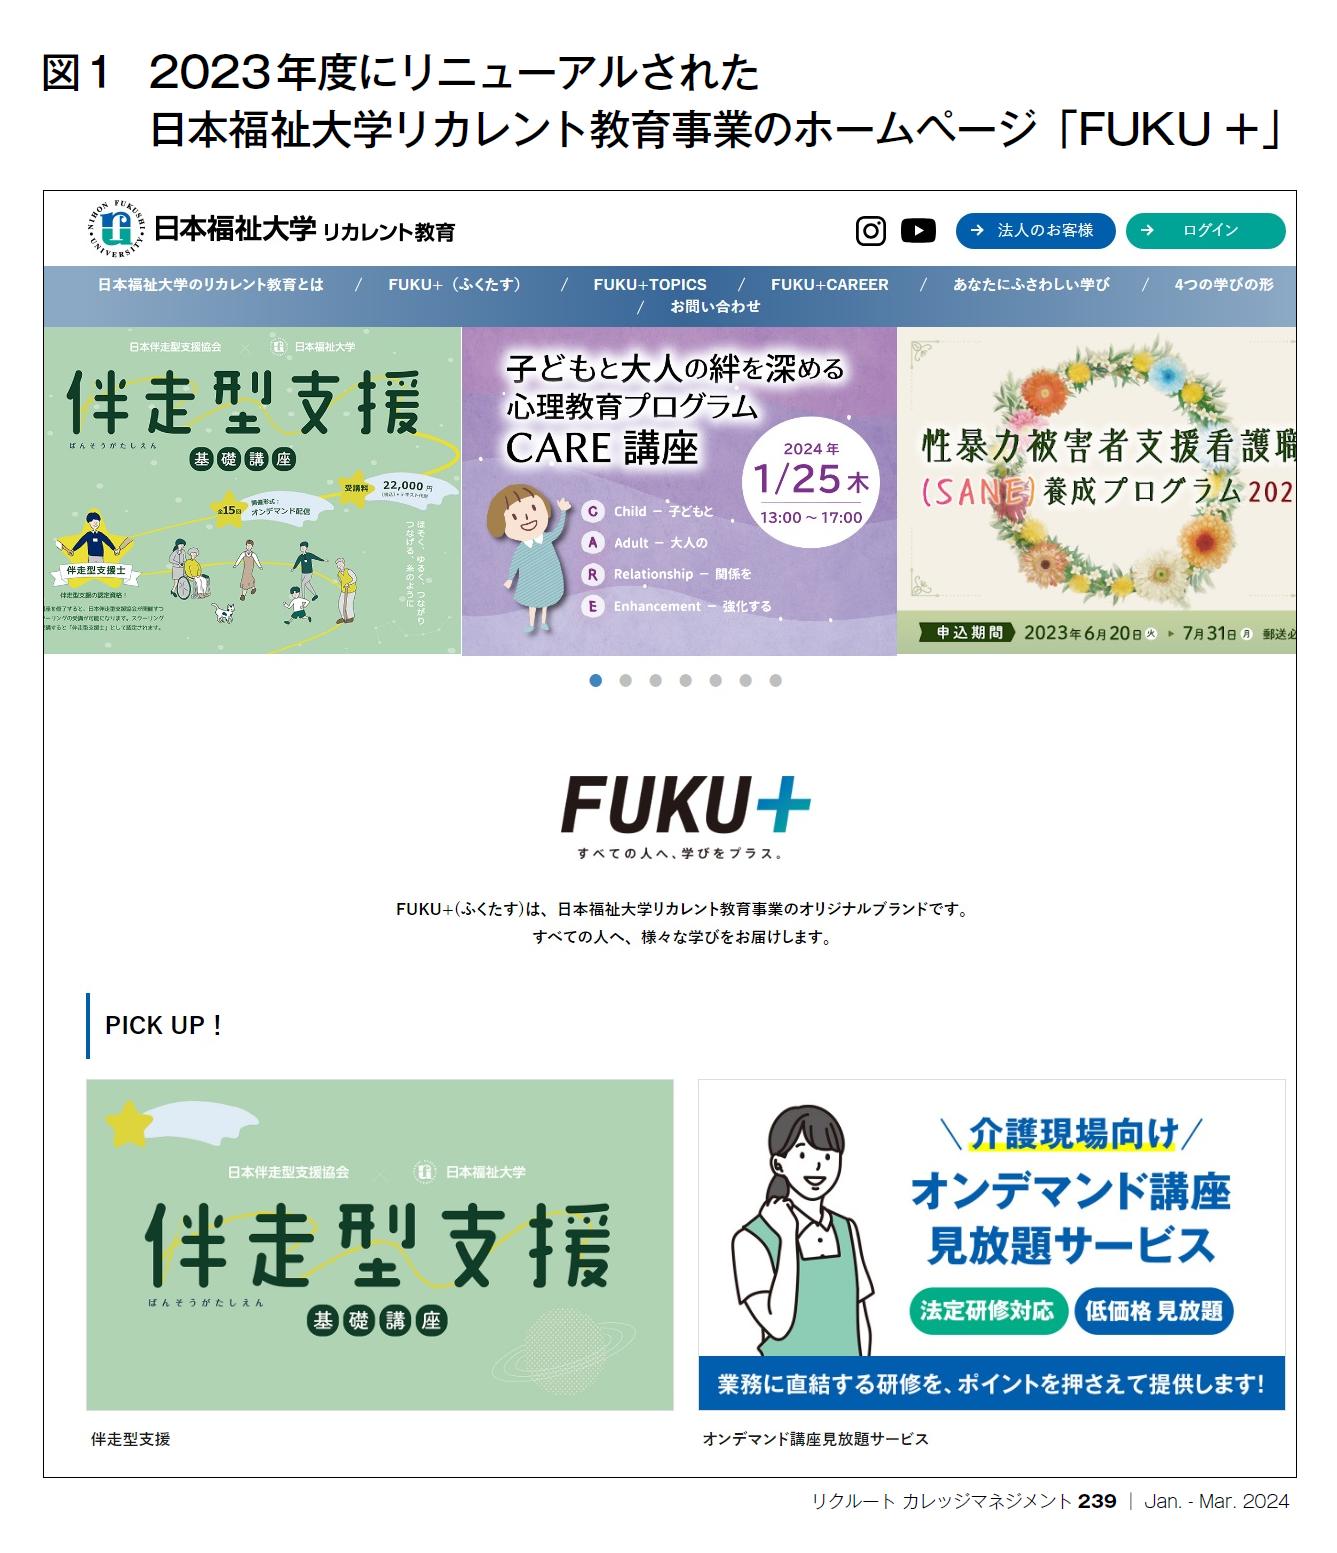 図1 2023年度にリニューアルされた日本福祉大学リカレント教育事業のホームページ「FUKU＋」